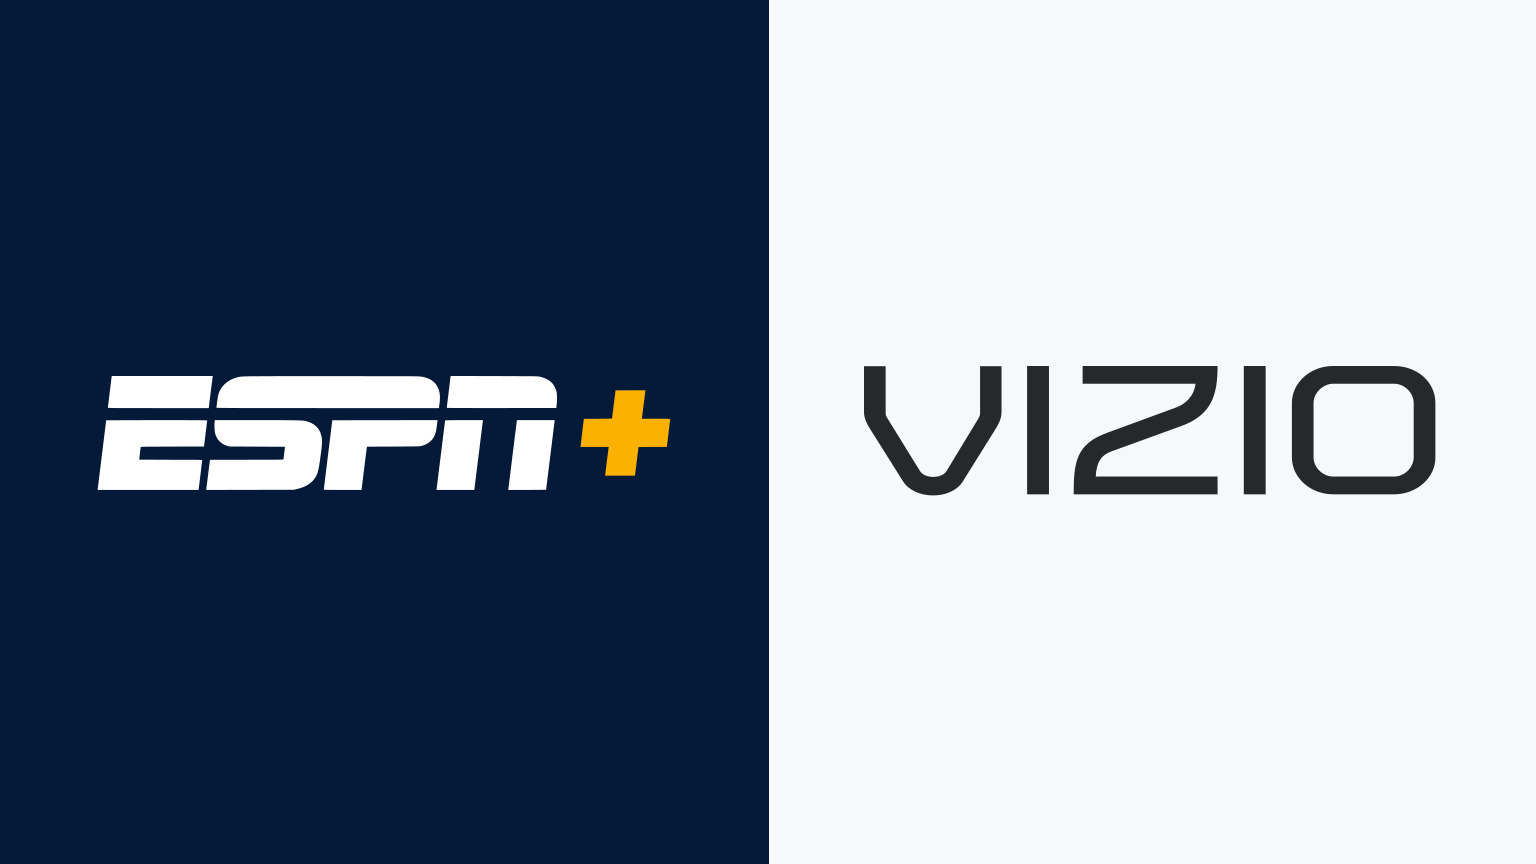 How To Download ESPN App On Vizio Smart TV Robots